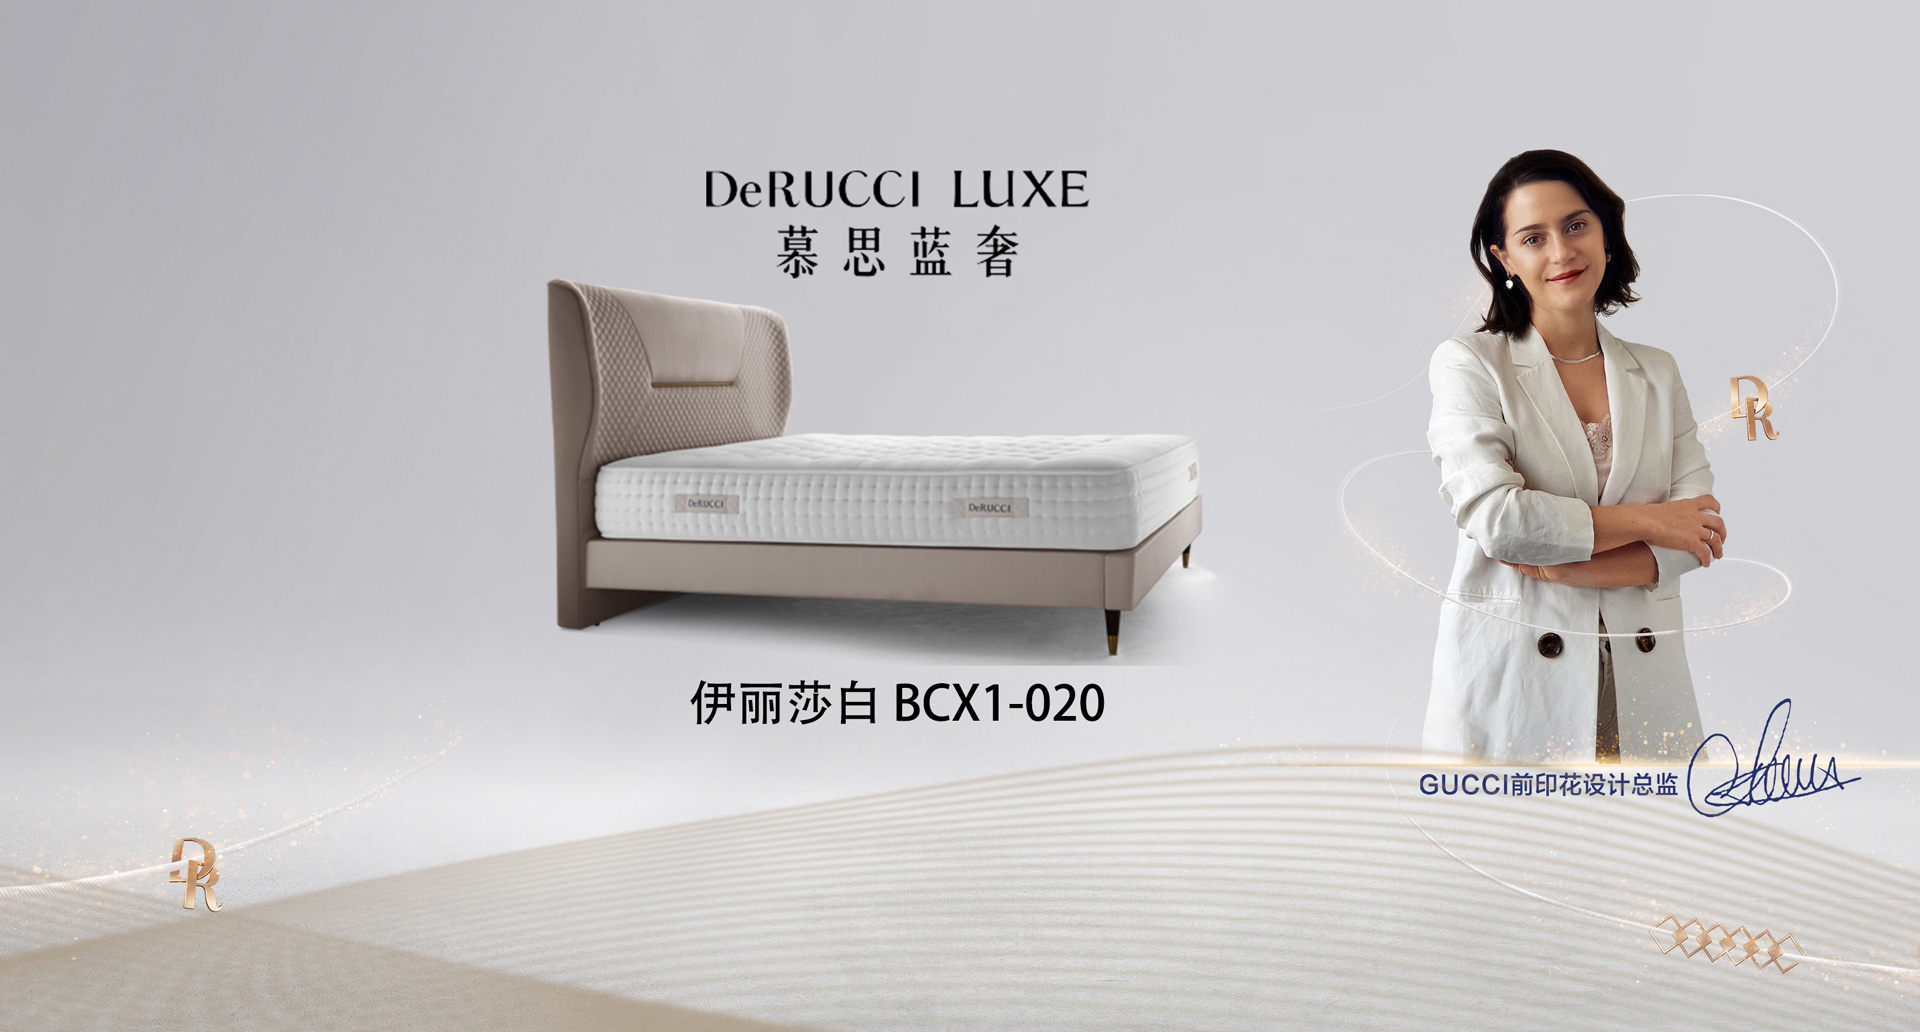 derucci furniture mattress 慕思家具